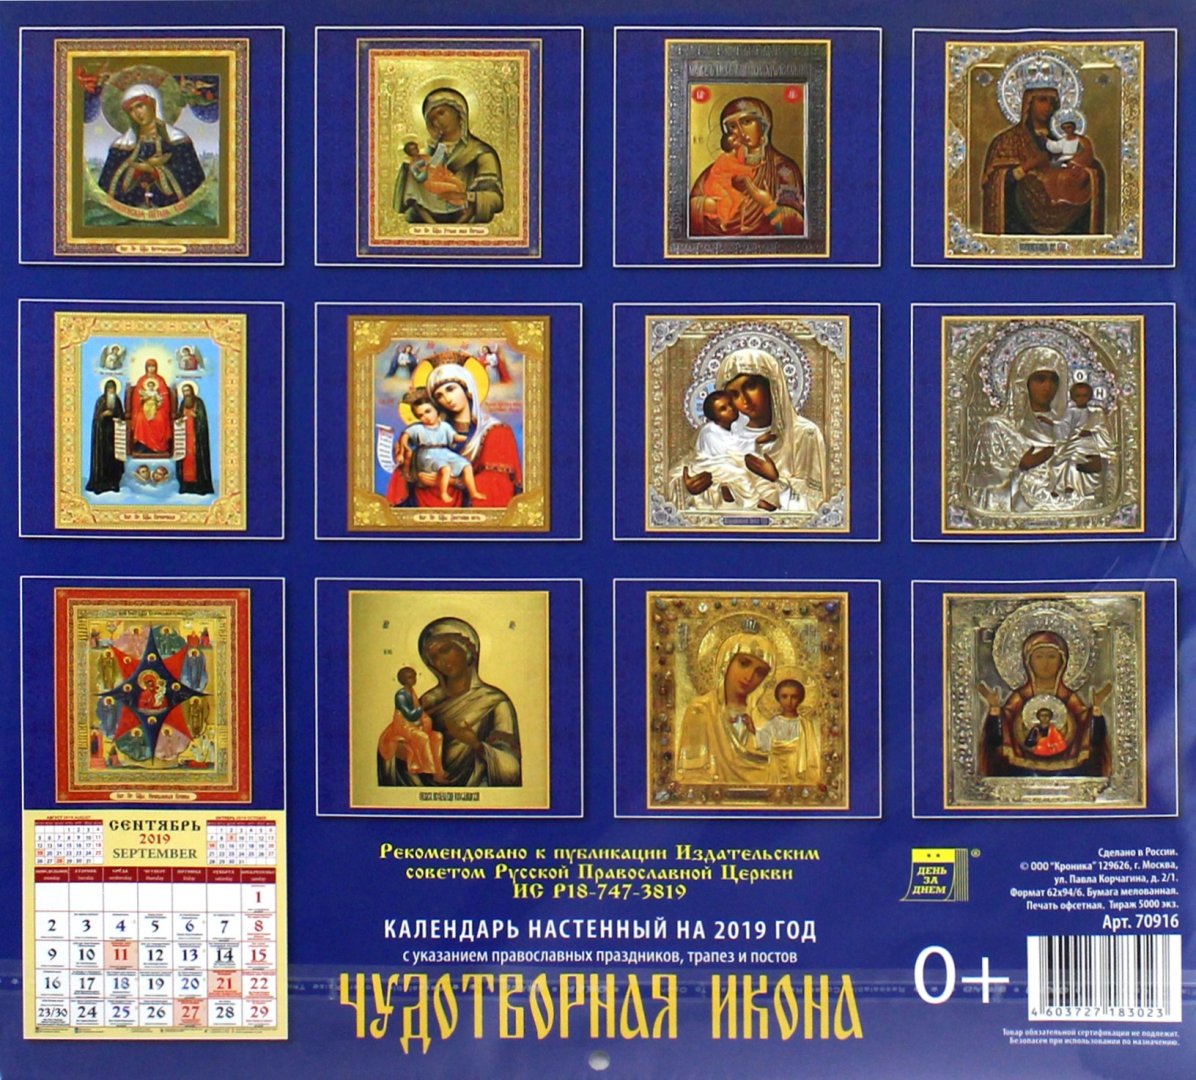 Православный календарь на 1 апреля 2024